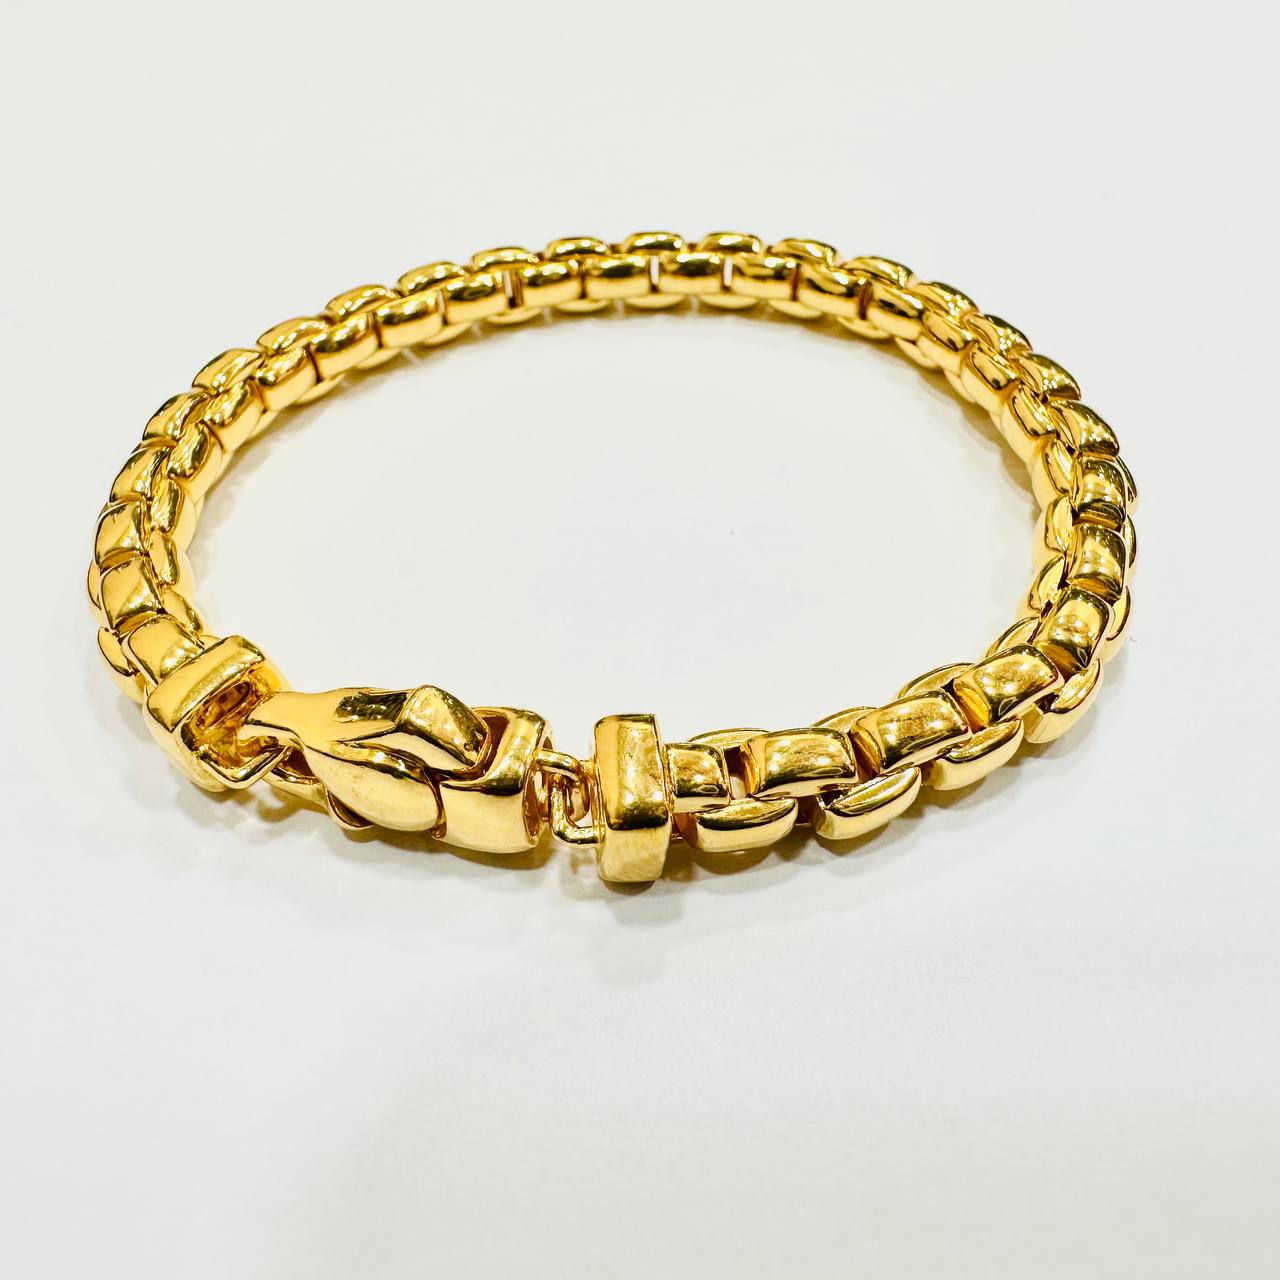 22k / 916 Gold Semi Solid Anchor Bracelet V1-916 gold-Best Gold Shop